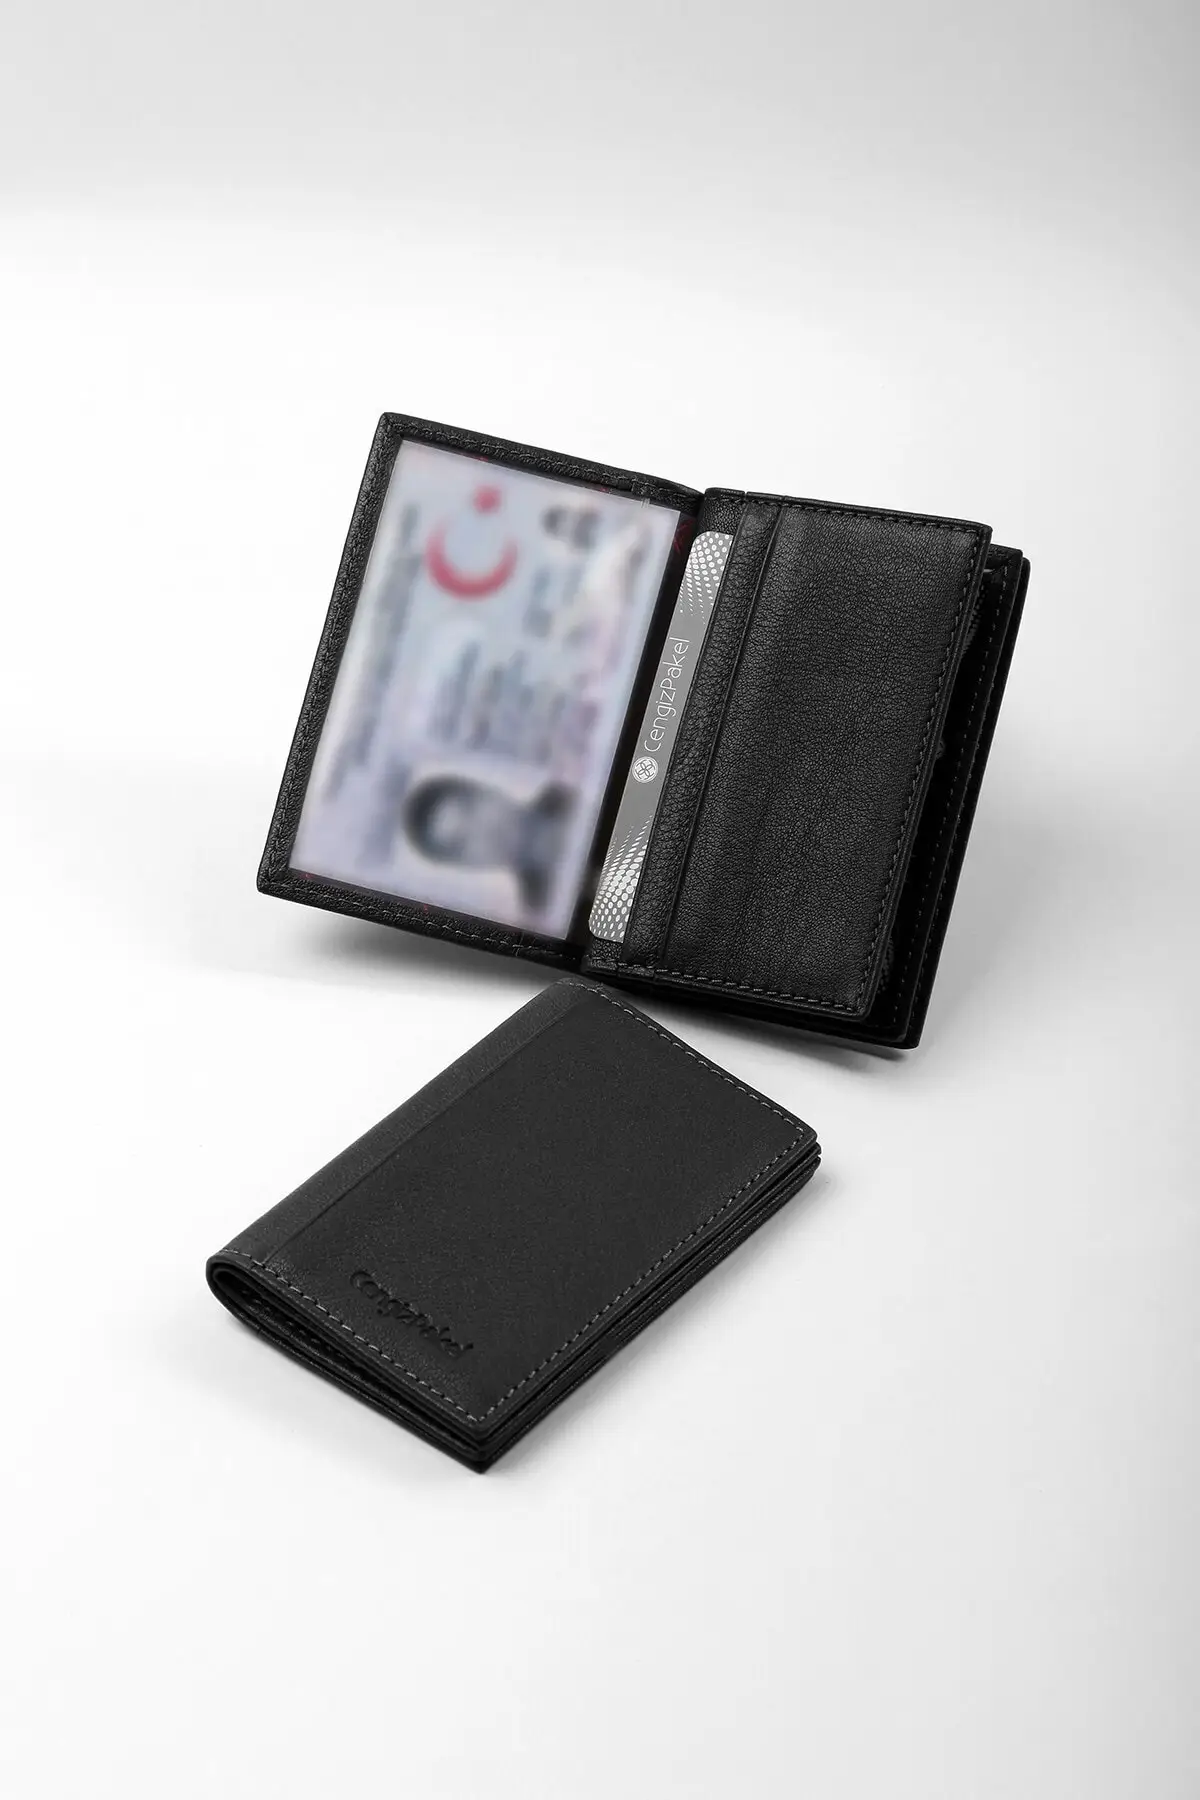 

Стильный кошелек из натуральной кожи, мужской клатч для кредитных карт black-t, чехол для качественной идентификационной Карты, монеты